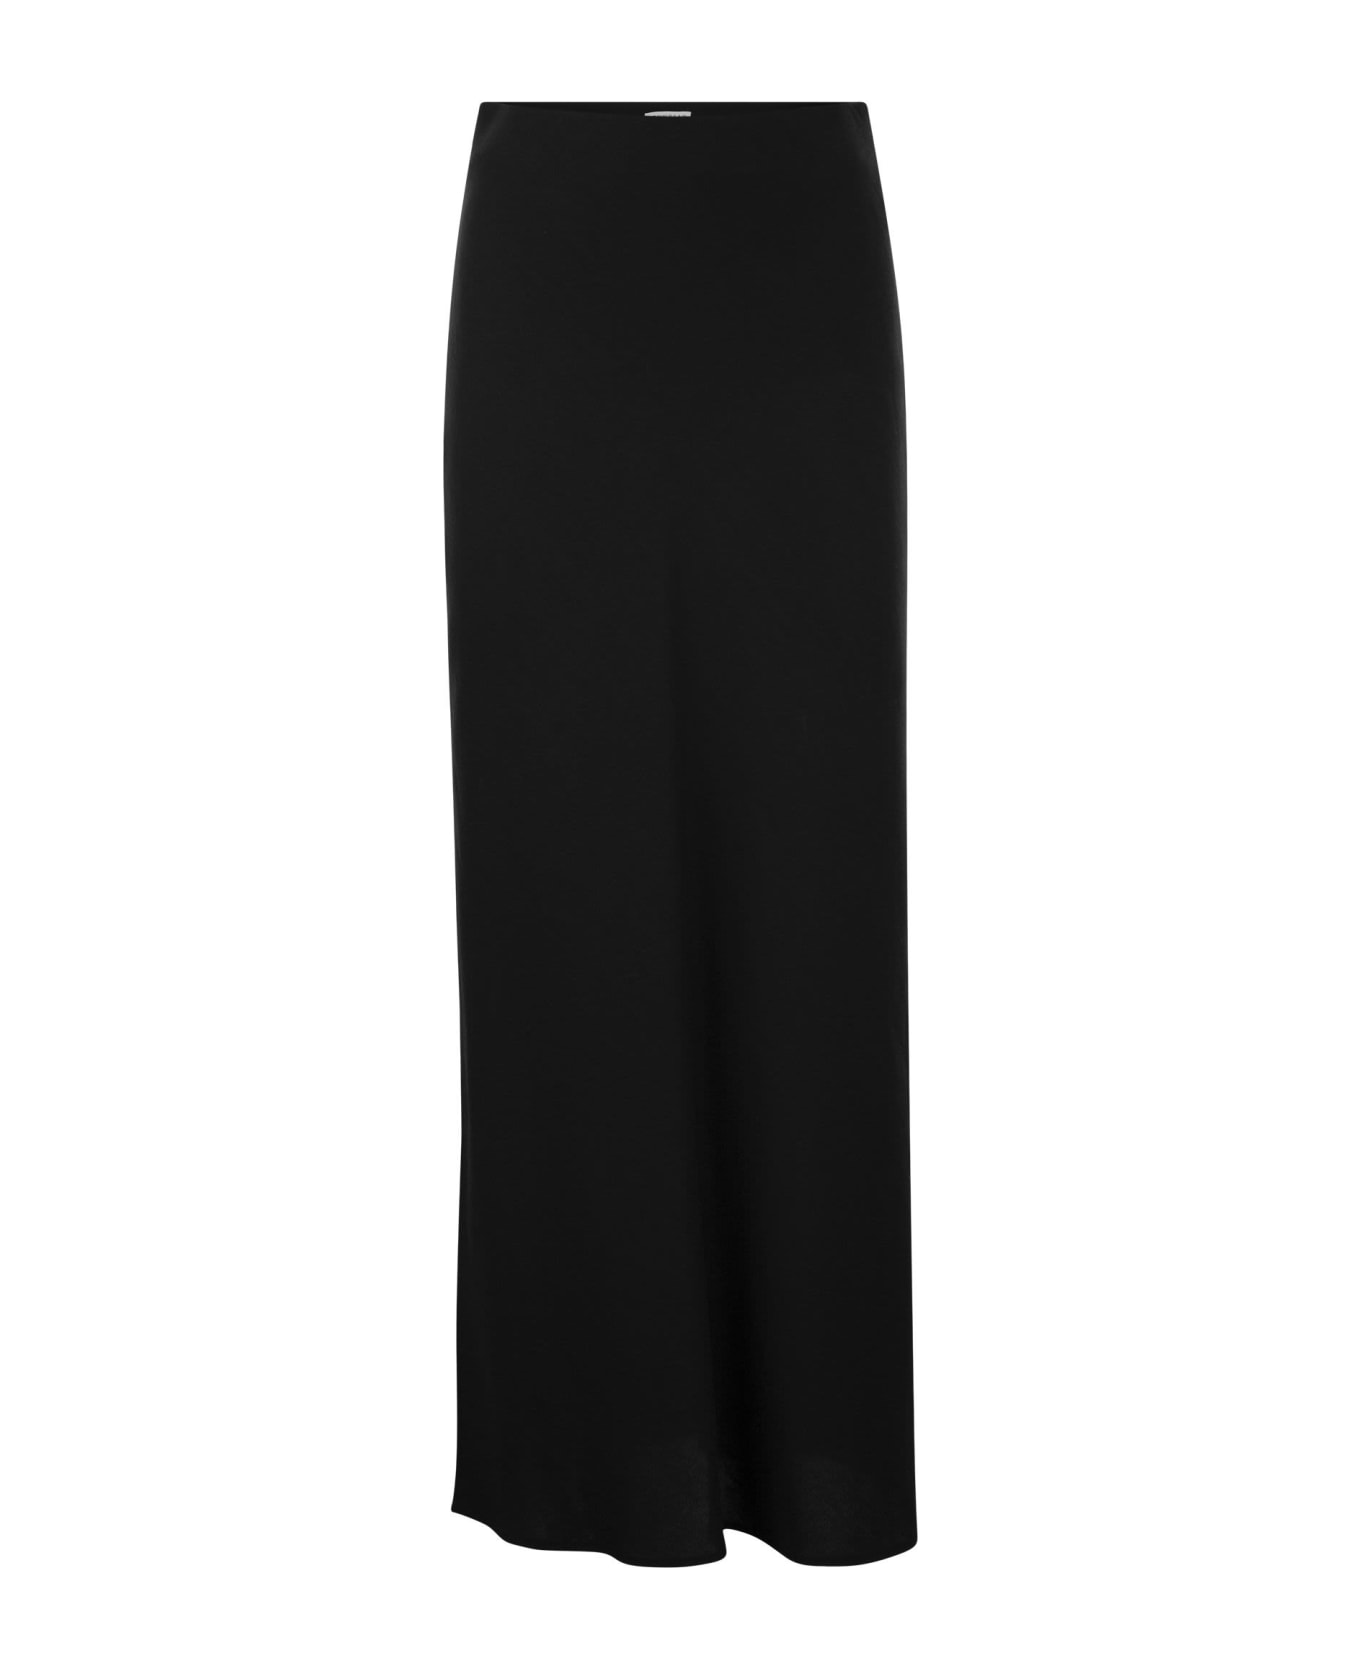 Brunello Cucinelli Viscose And Linen Long Pencil Skirt - Black スカート